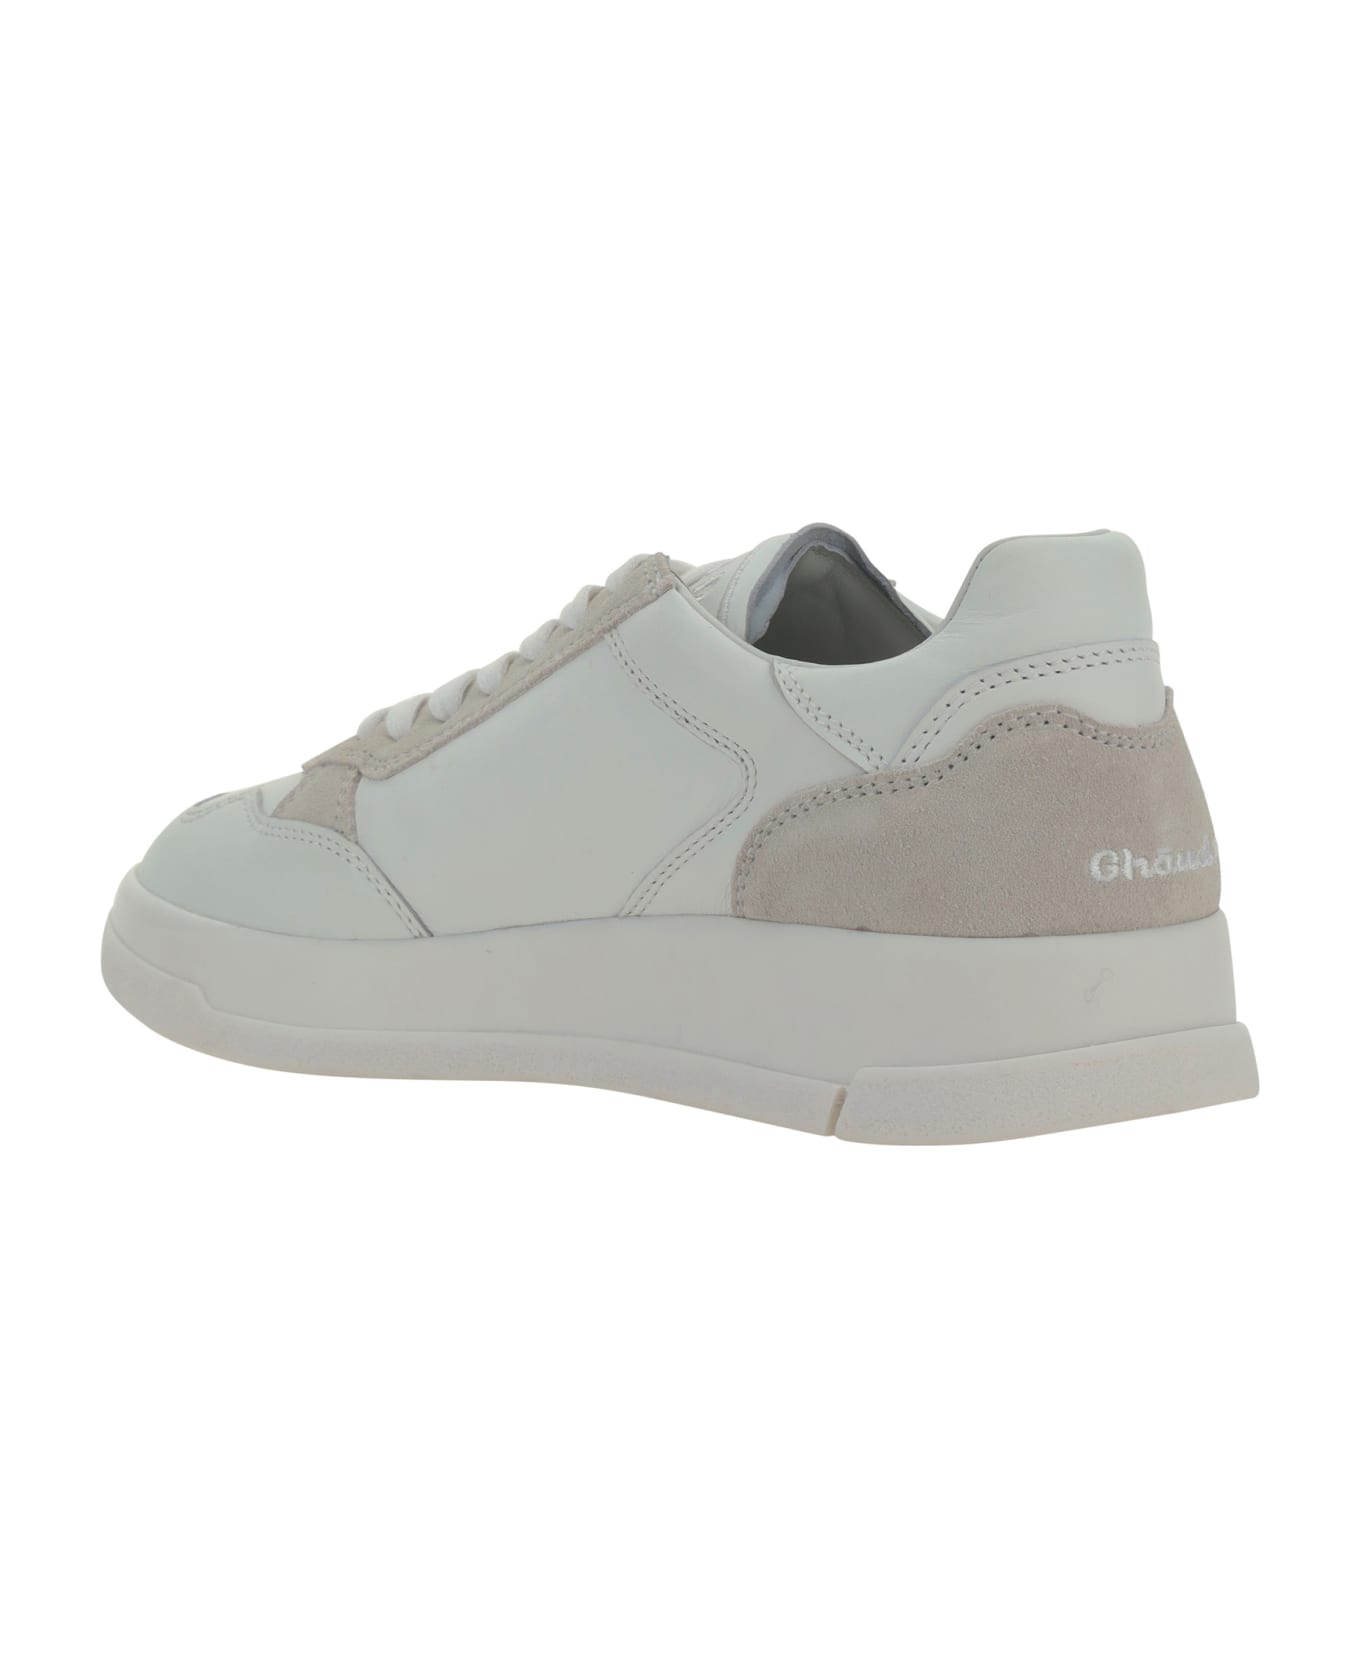 GHOUD Tweener Sneakers - White